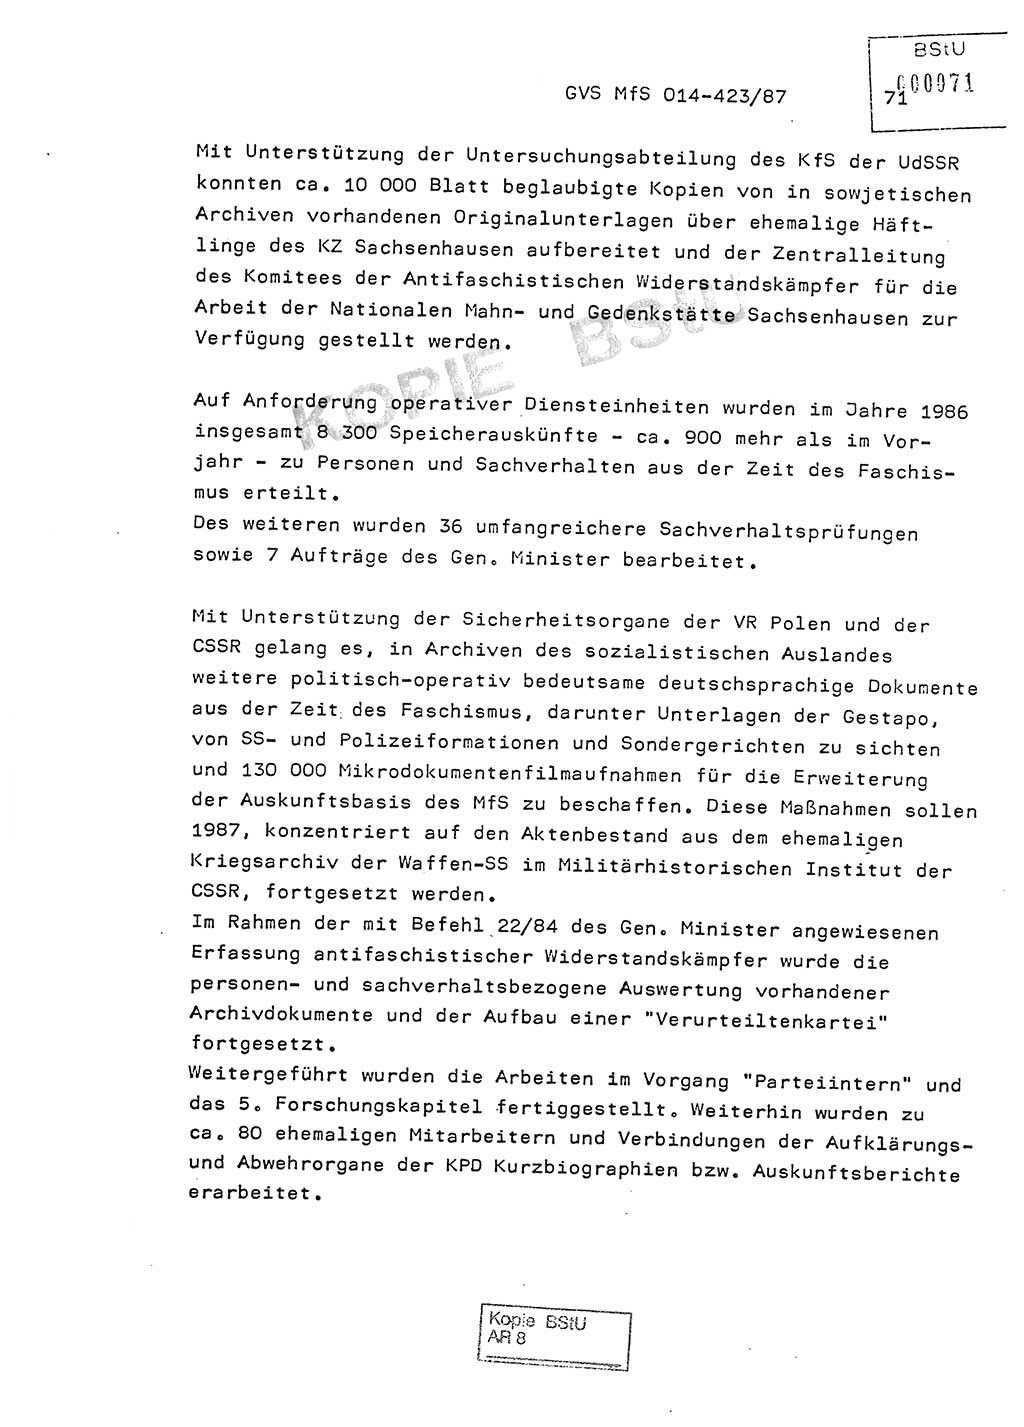 Jahresbericht der Hauptabteilung (HA) Ⅸ 1986, Einschätzung der Wirksamkeit der Untersuchungsarbeit im Jahre 1986, Ministerium für Staatssicherheit (MfS) der Deutschen Demokratischen Republik (DDR), Hauptabteilung Ⅸ, Geheime Verschlußsache (GVS) o014-423/87, Berlin 1987, Seite 71 (Einsch. MfS DDR HA Ⅸ GVS o014-423/87 1986, S. 71)